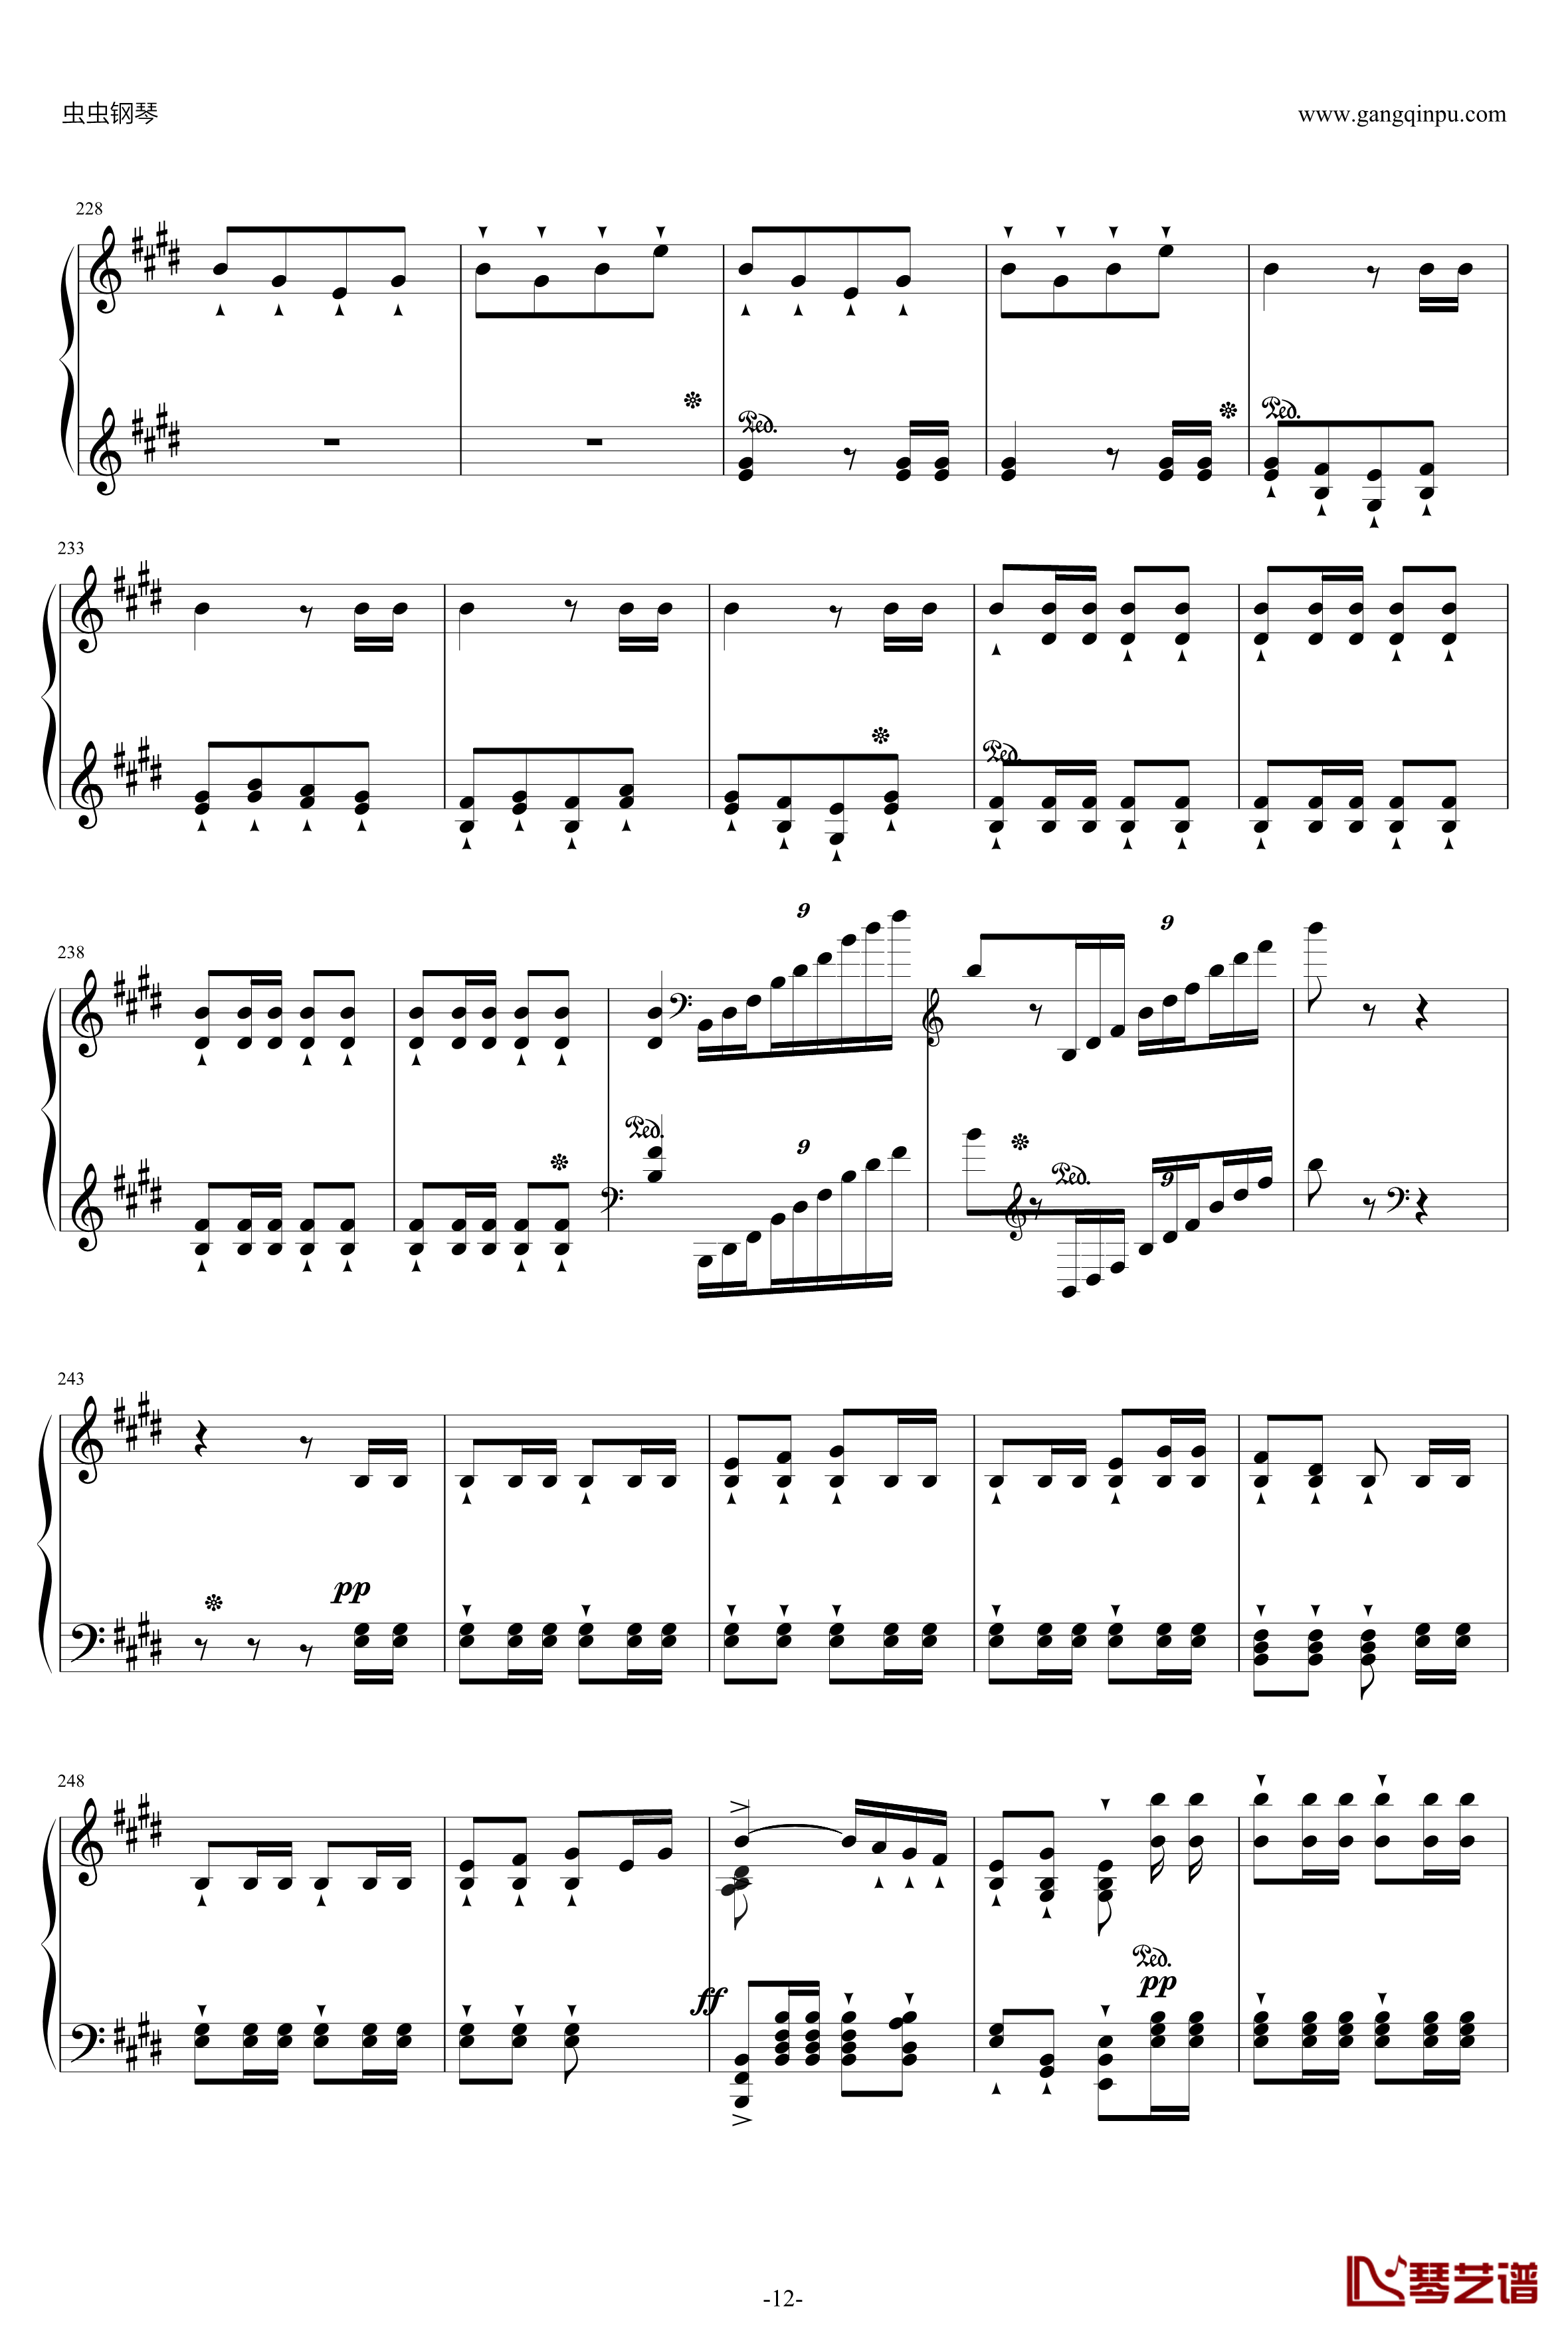 威廉·退尔序曲钢琴谱-李斯特S.55212